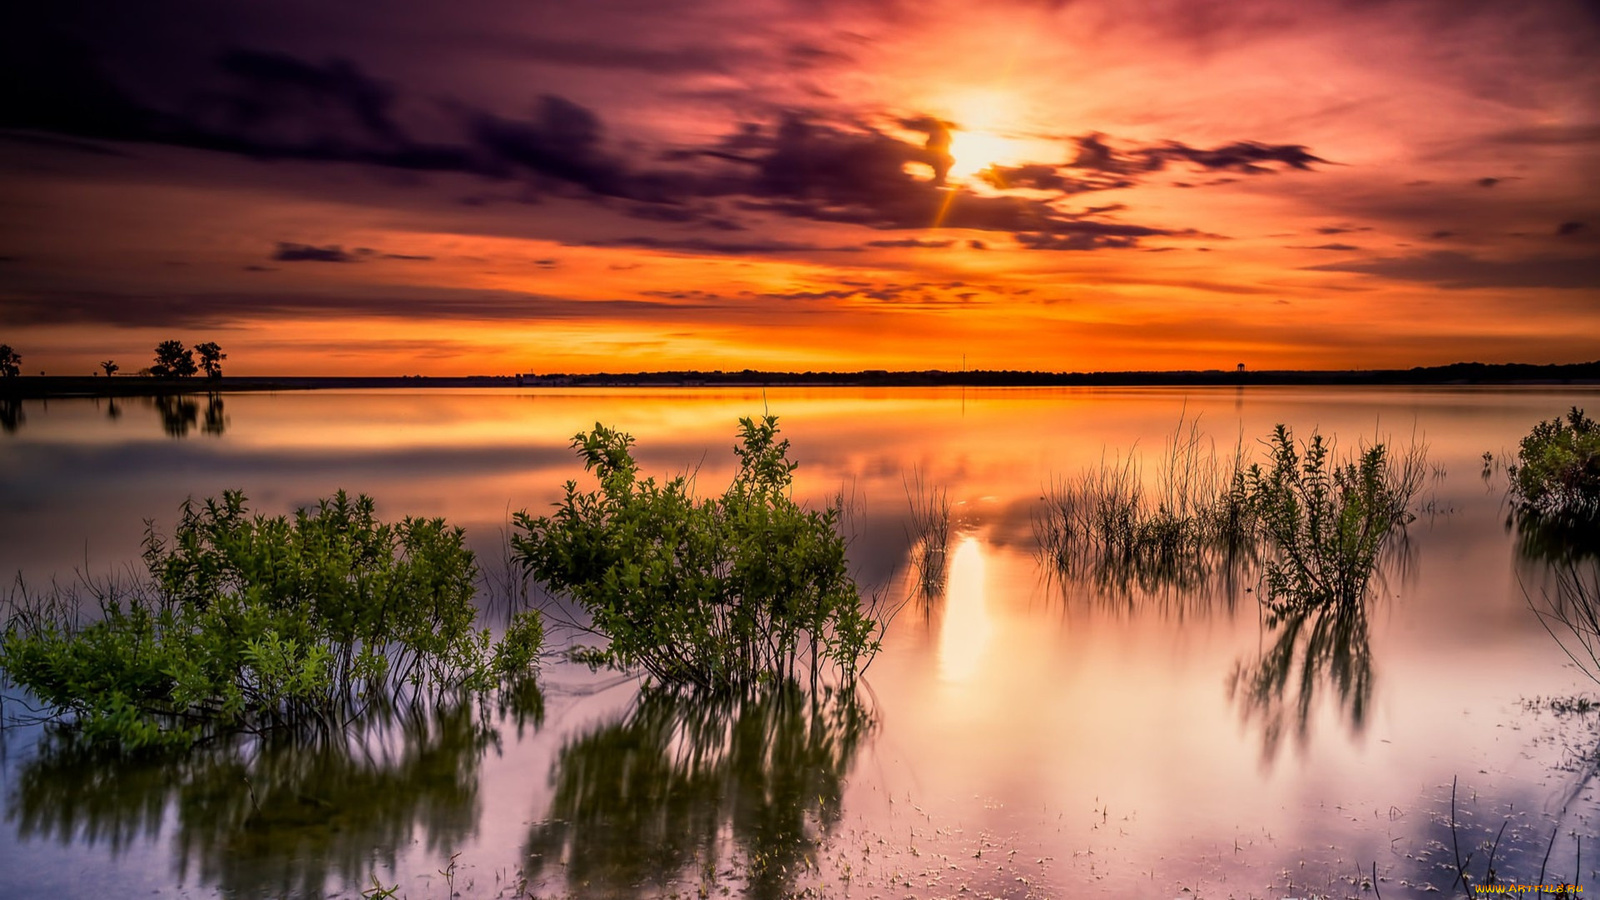 sunset at benbrook lake, texas